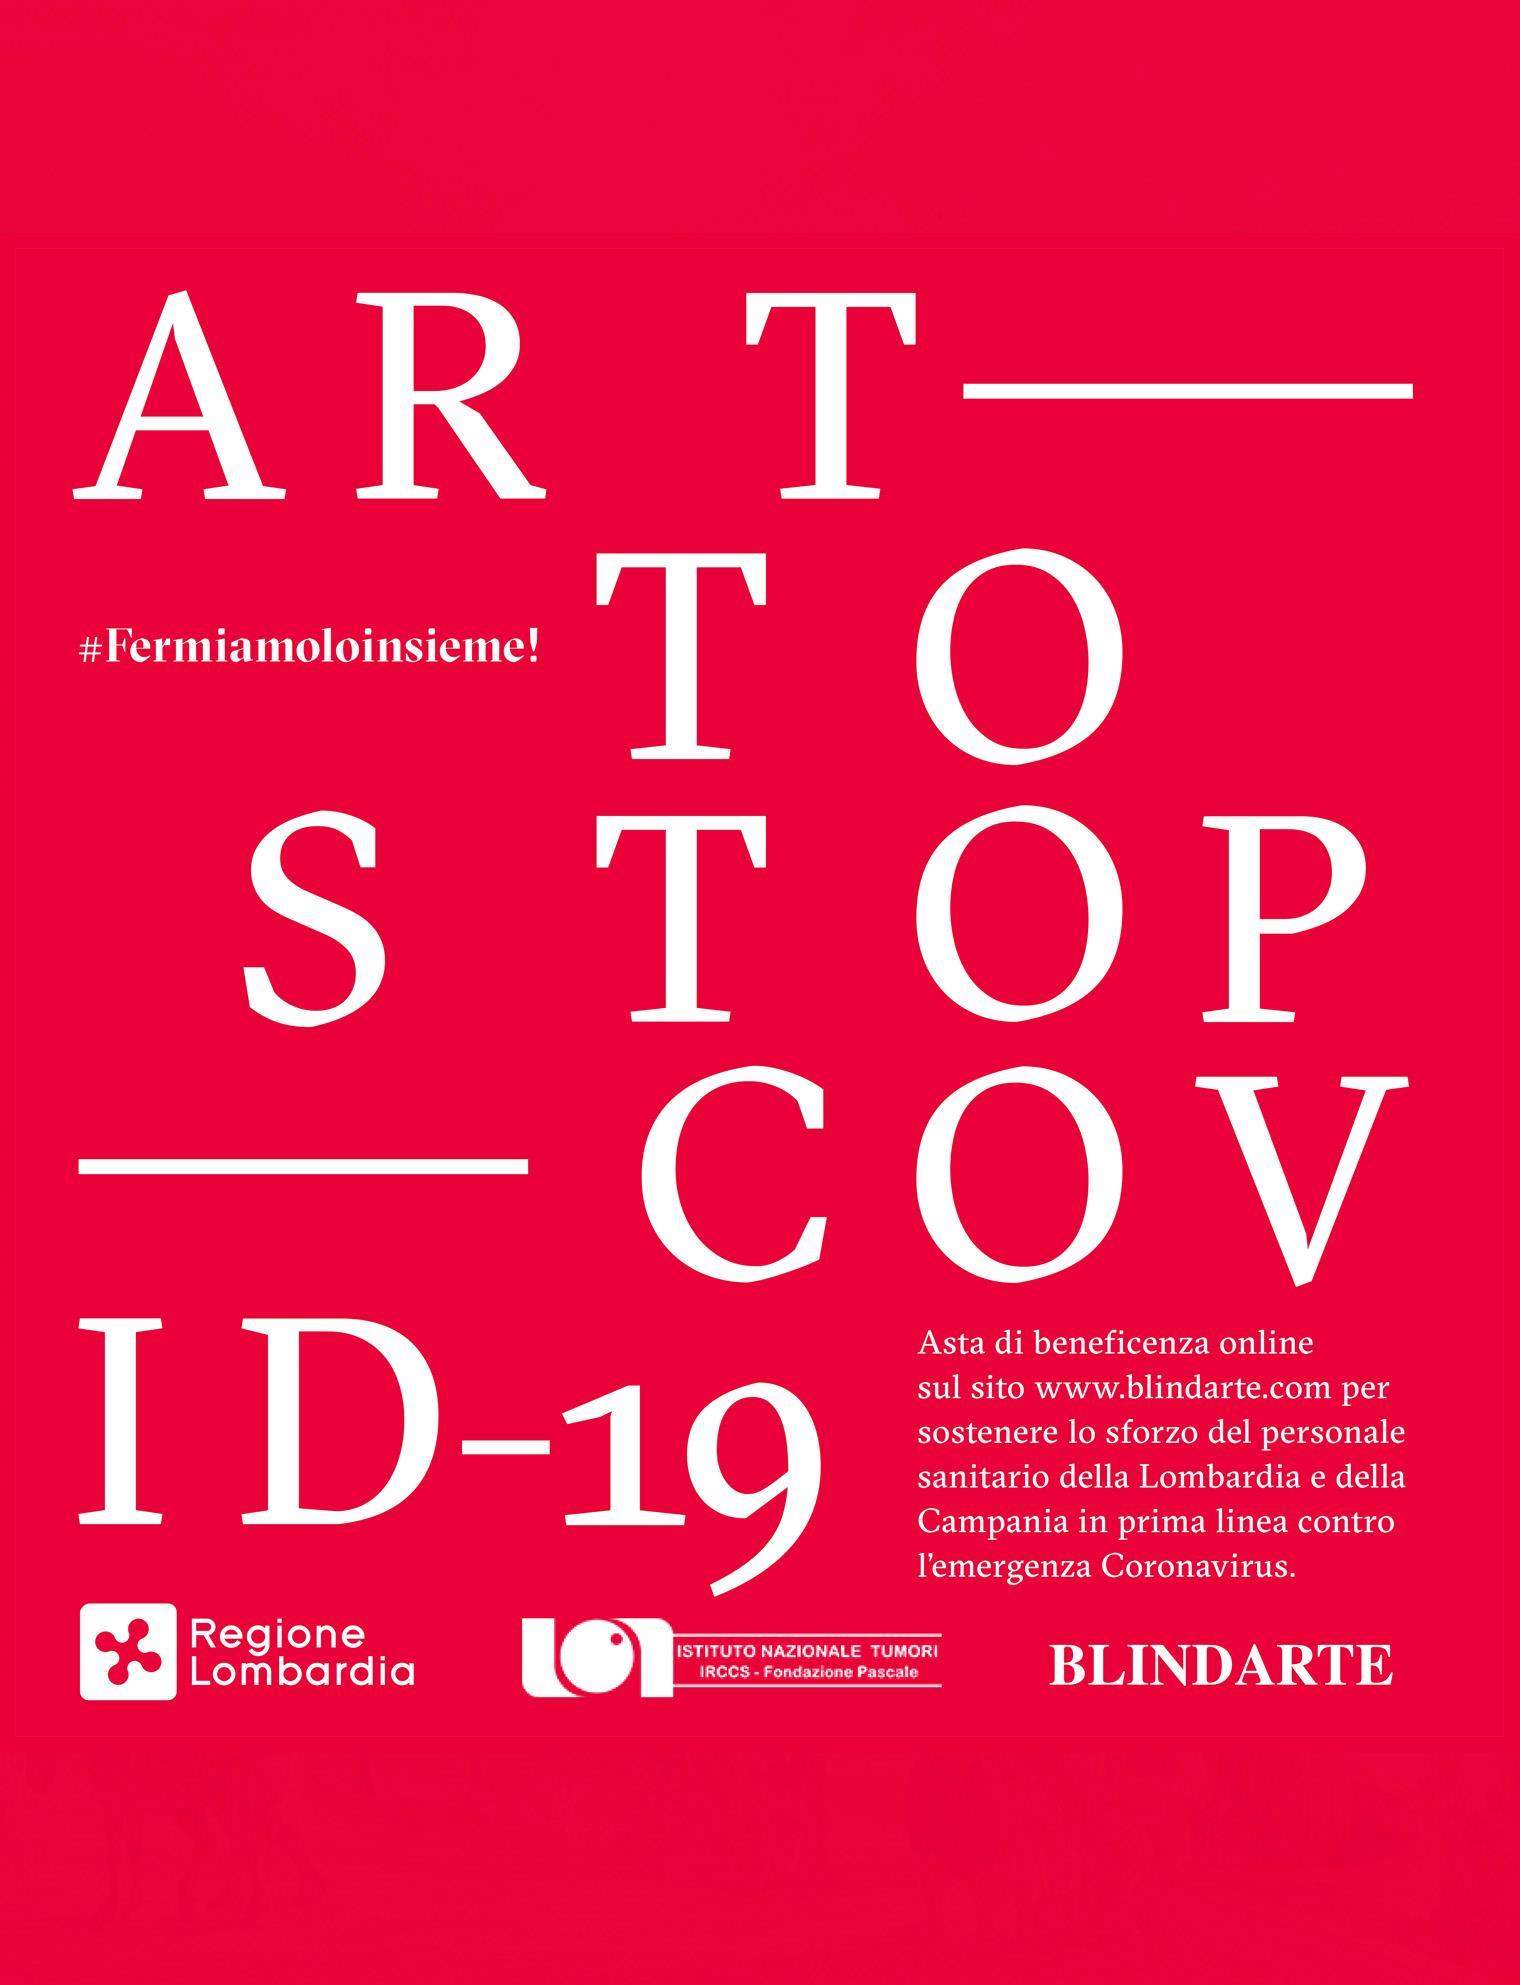 Blindarte propose une vente d'œuvres d'artistes italiens contemporains de premier plan pour collecter des fonds contre Covid-19